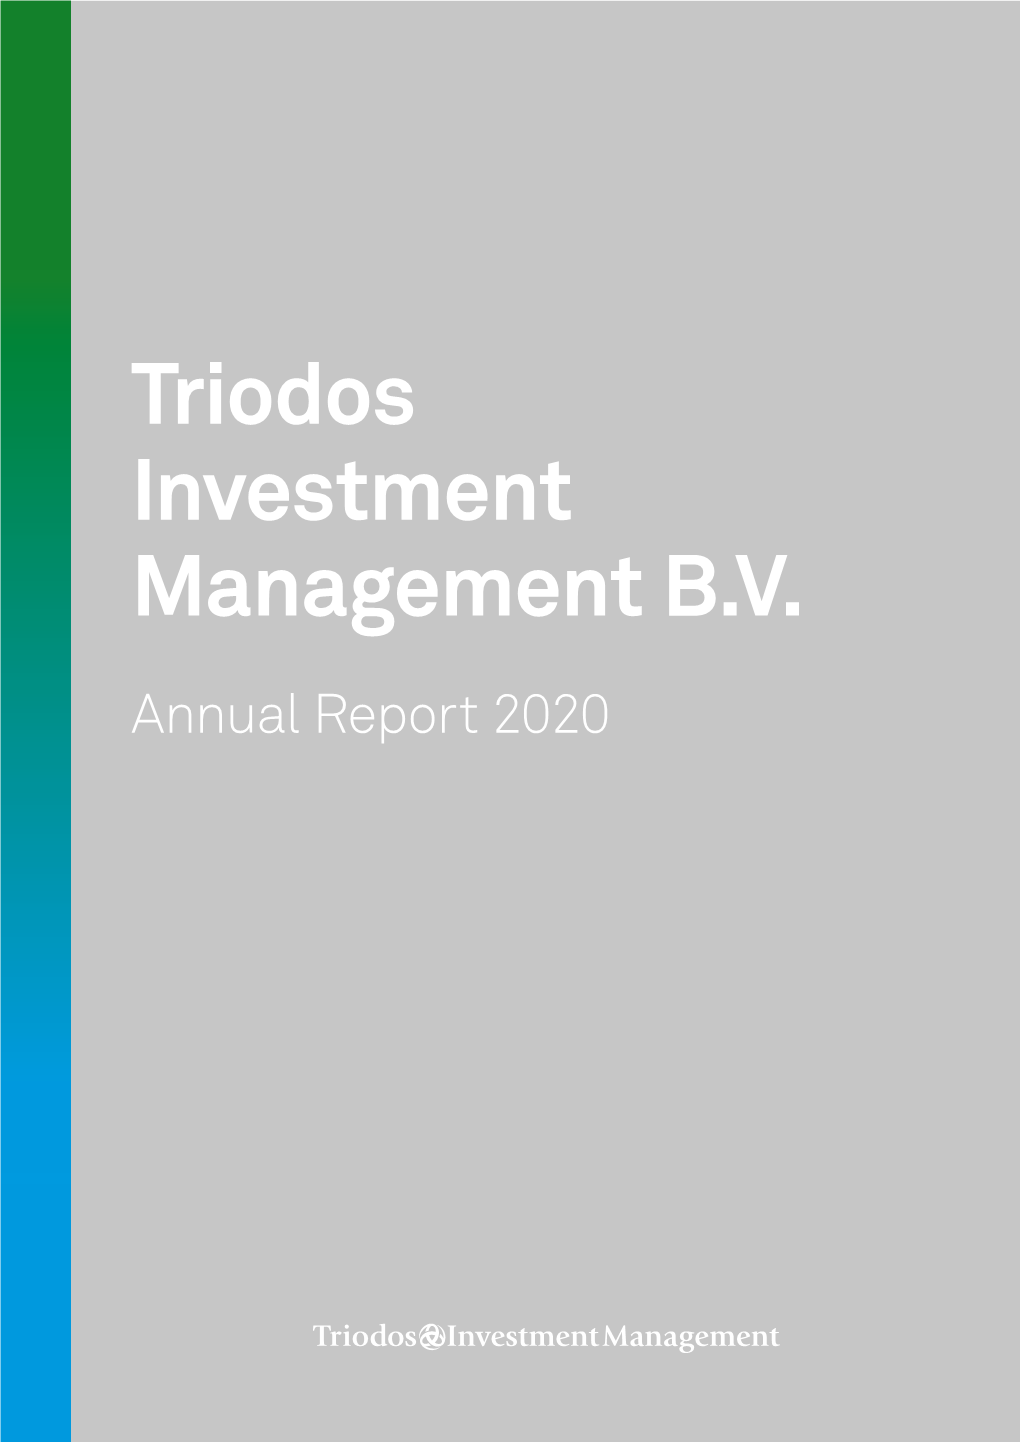 Annual Report Triodos Investment Management 2020